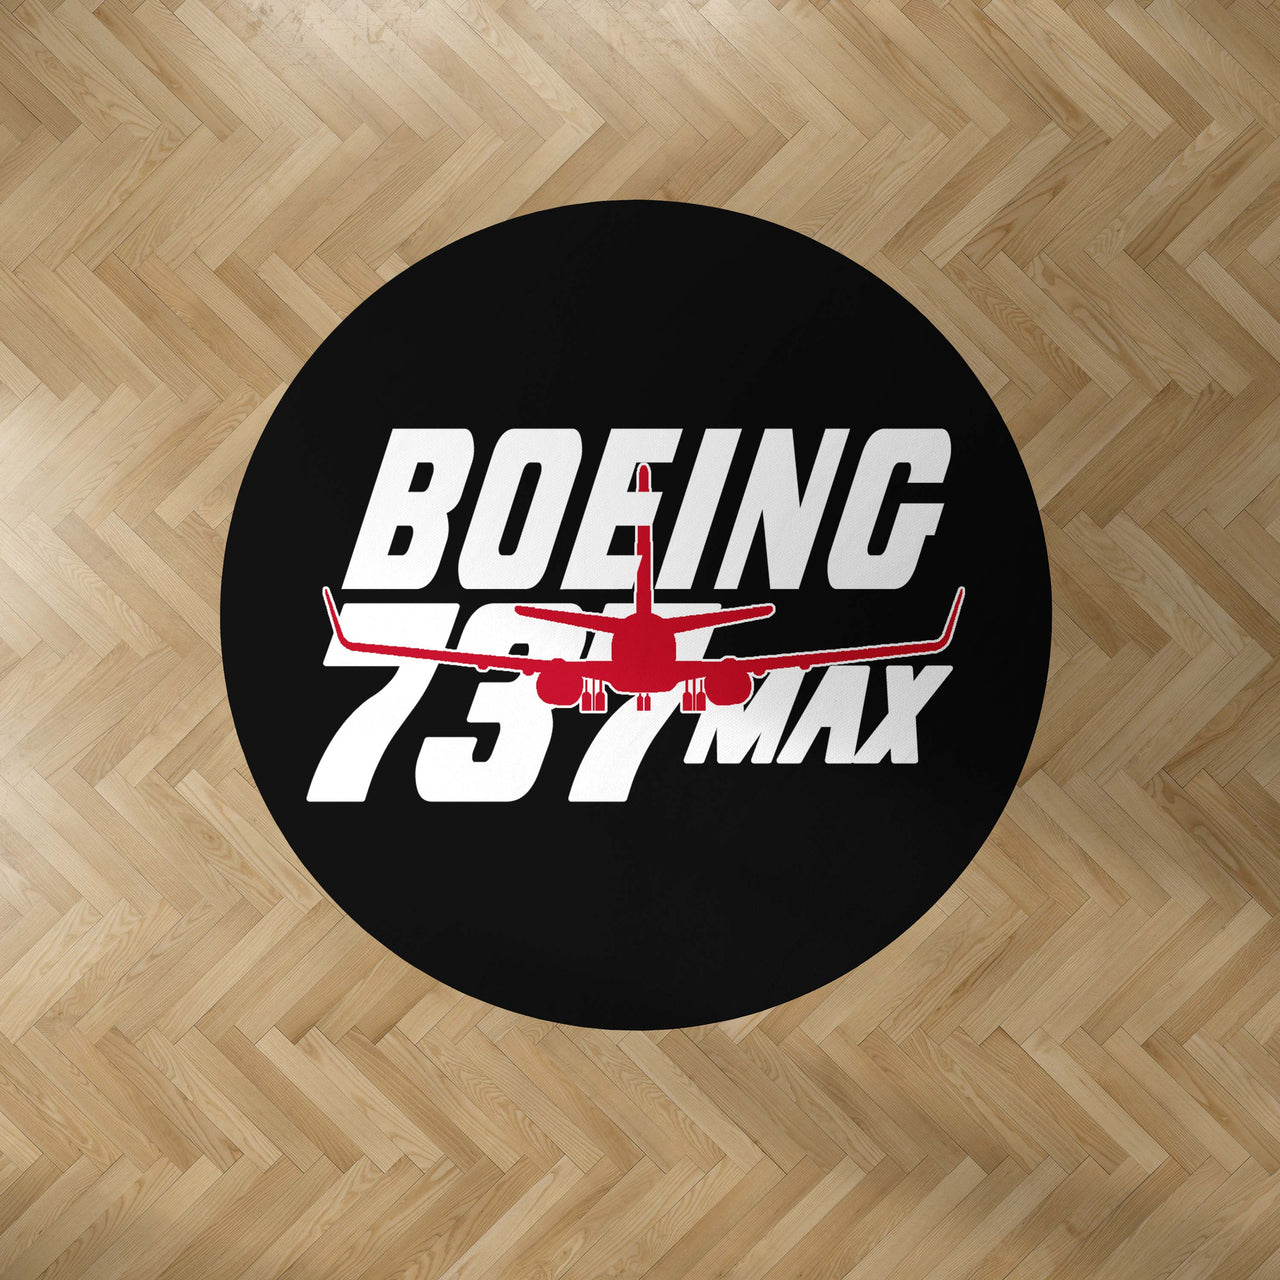 Amazing Boeing 737 Max Designed Carpet & Floor Mats (Round)